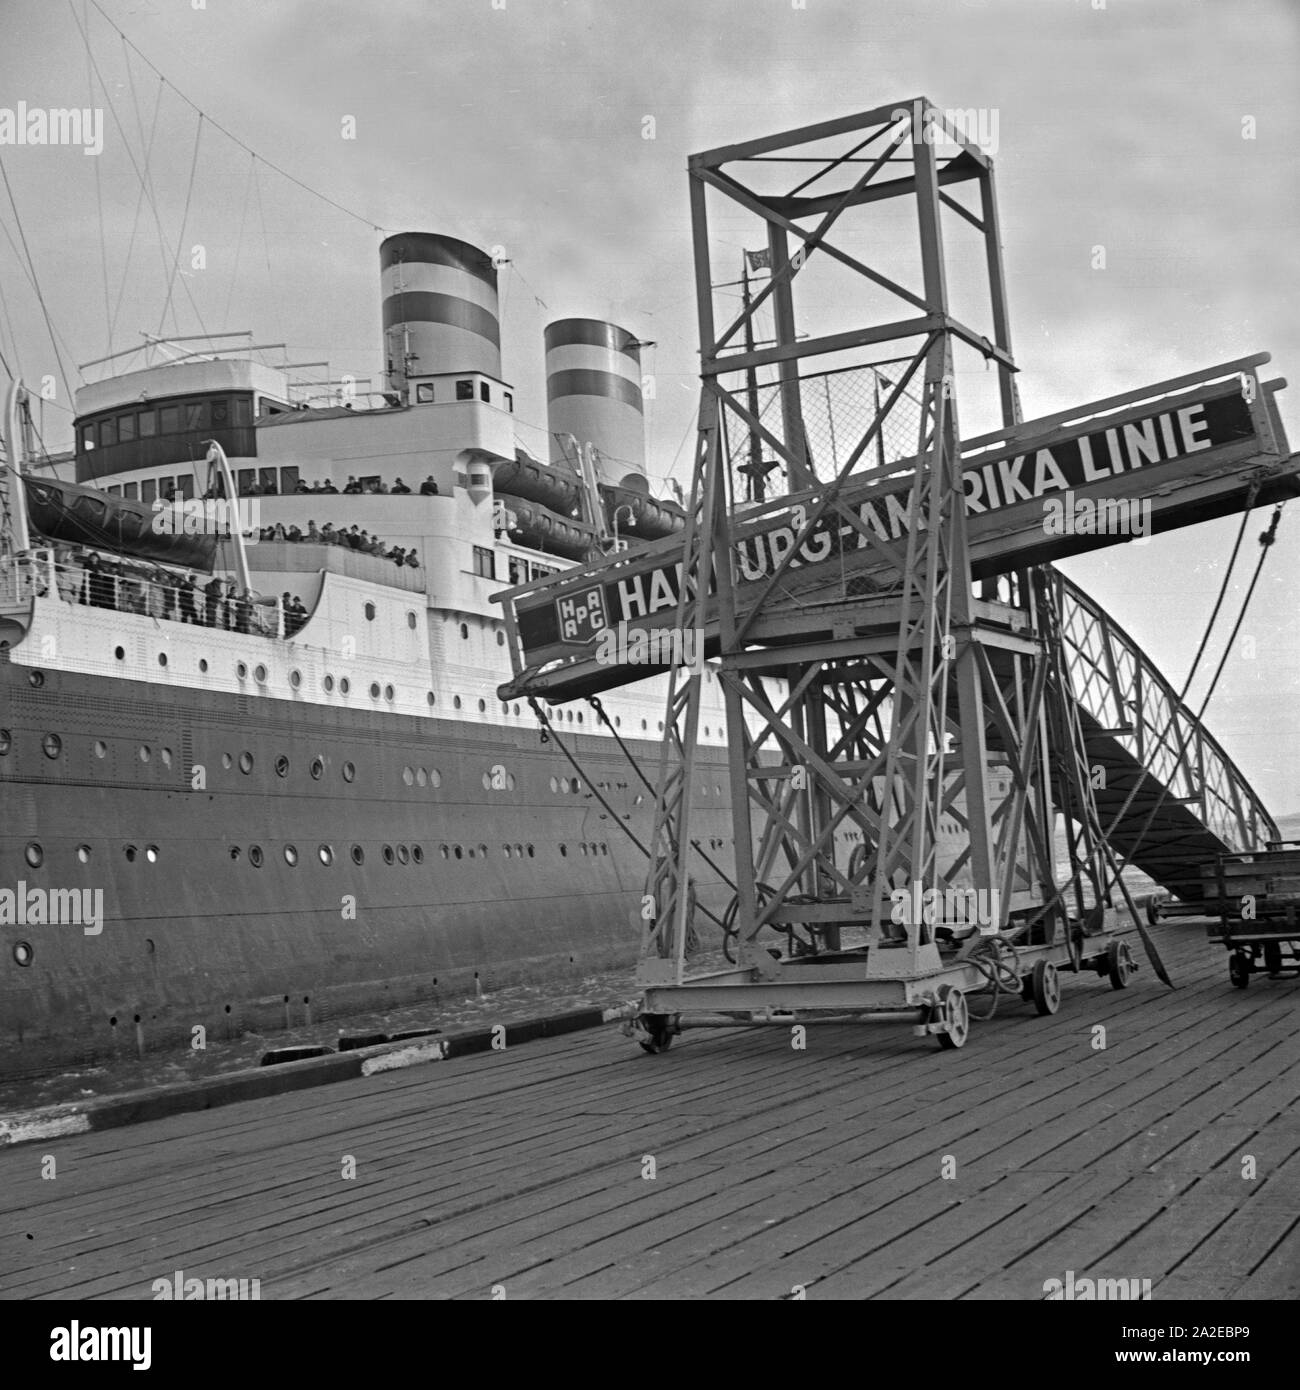 Das 1925 gebaute deutsche Passagierschiff 'Deutschland' legt in Cuxhaven an, Deutschland 1930er Jahre. German passenger ship 'Deutschland' at Cuxhaven, Germany 1930s. Stock Photo